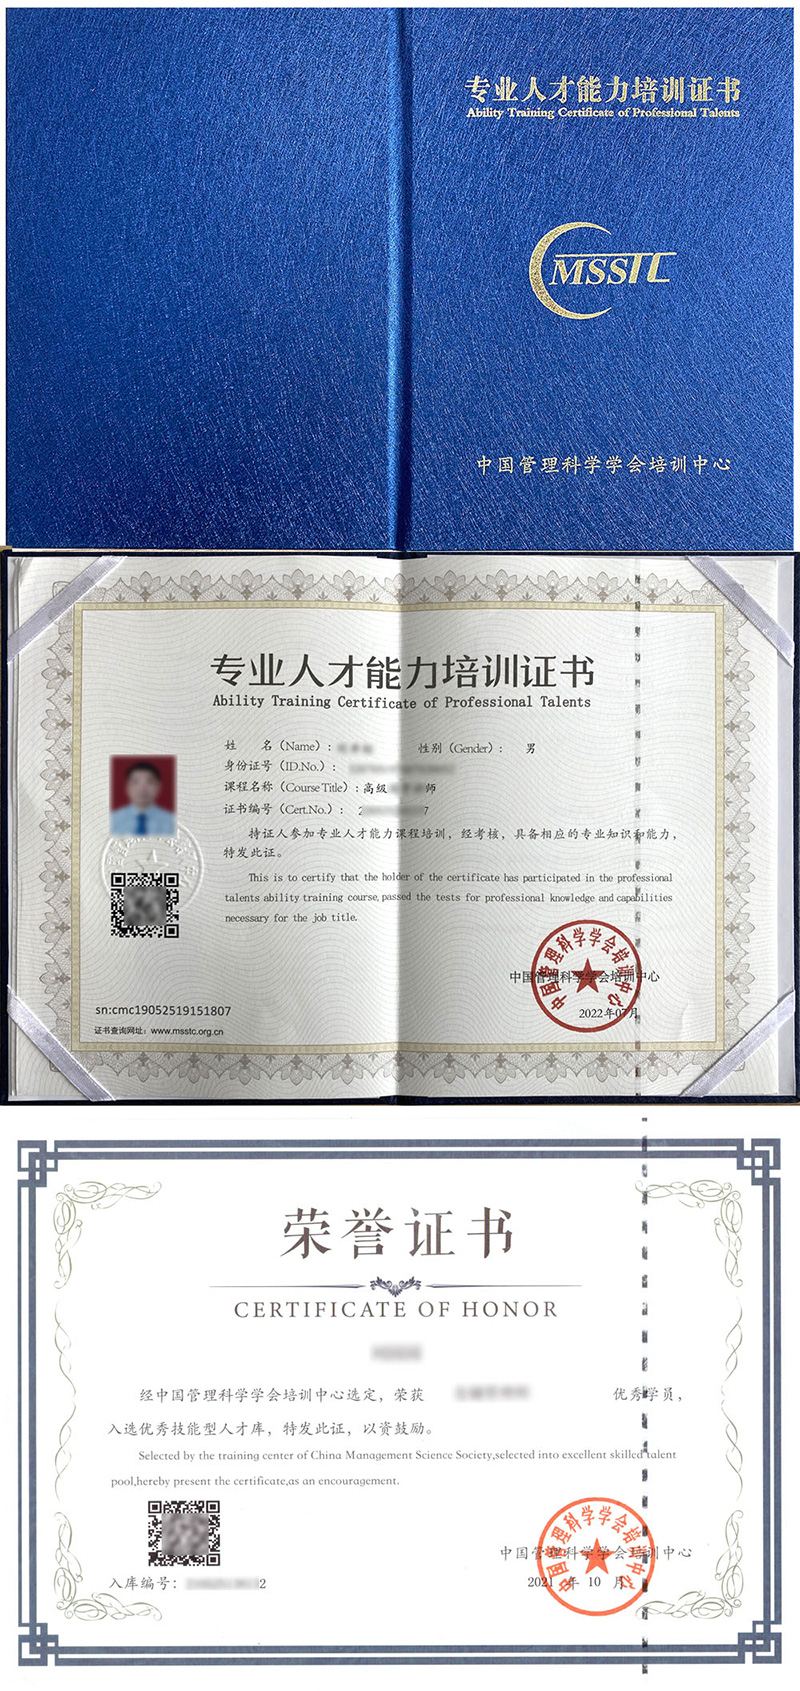 中国管理科学学会培训中心 专业人才能力培训证书 物业管理师证证书样本